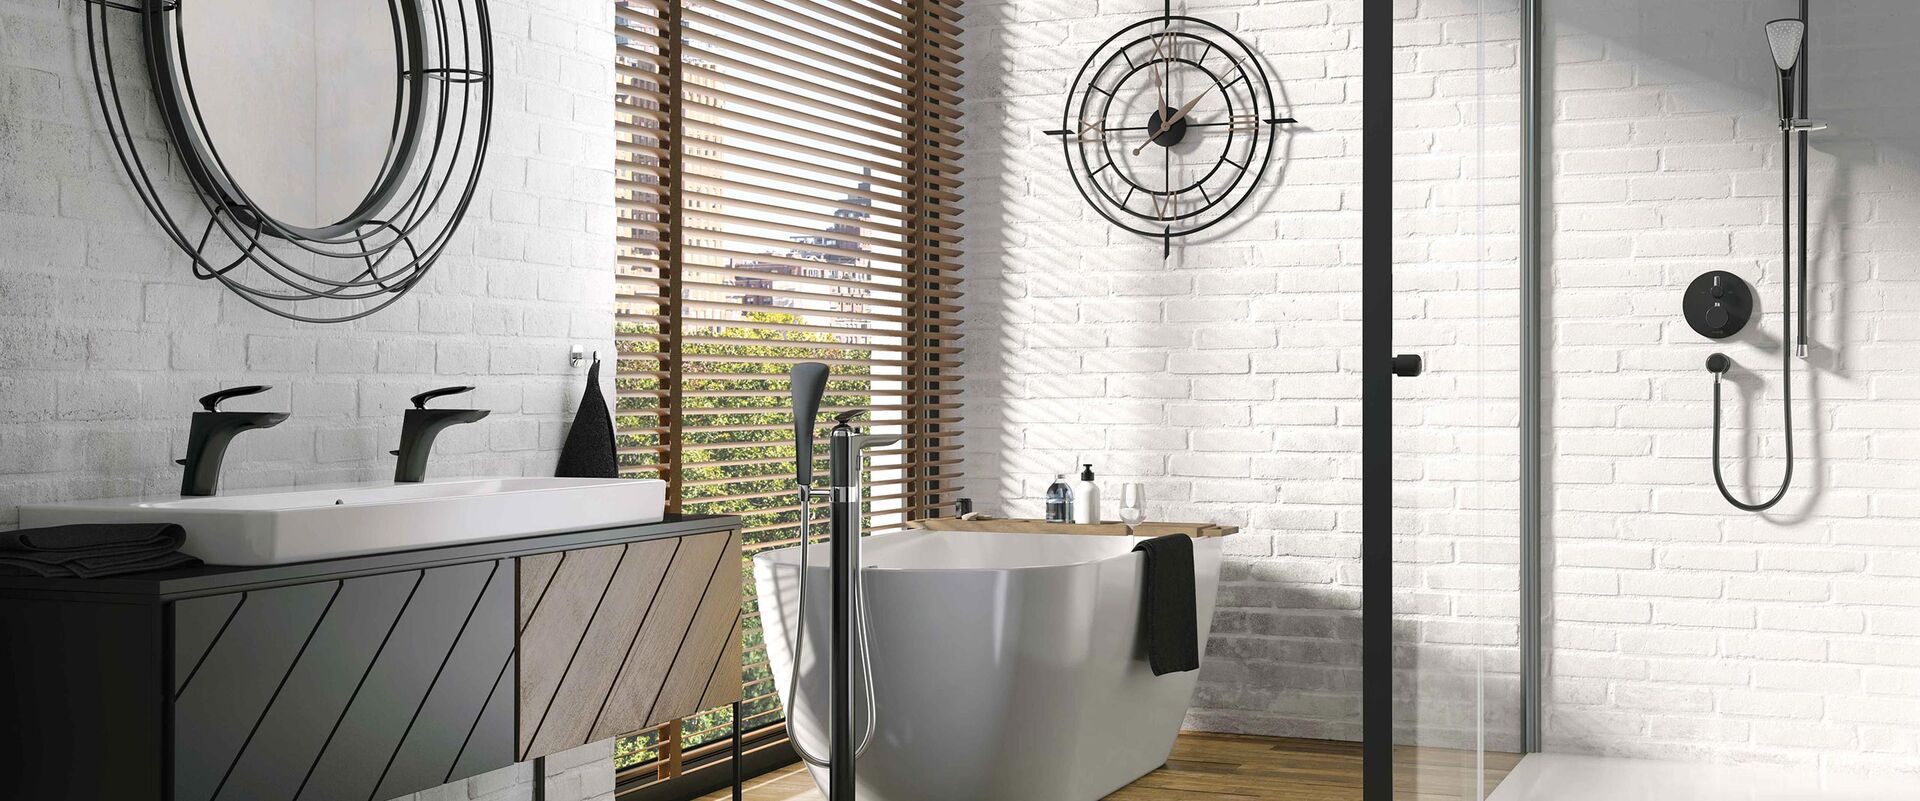 Modernes Badezimmer von Kludi, das mit der Armaturenlinie Balance Black ausgestattet wurde. Die matt-schwarze Oberfläche der Armaturen harmoniert optimal mit Spiegel und der Dekoration im Bad.